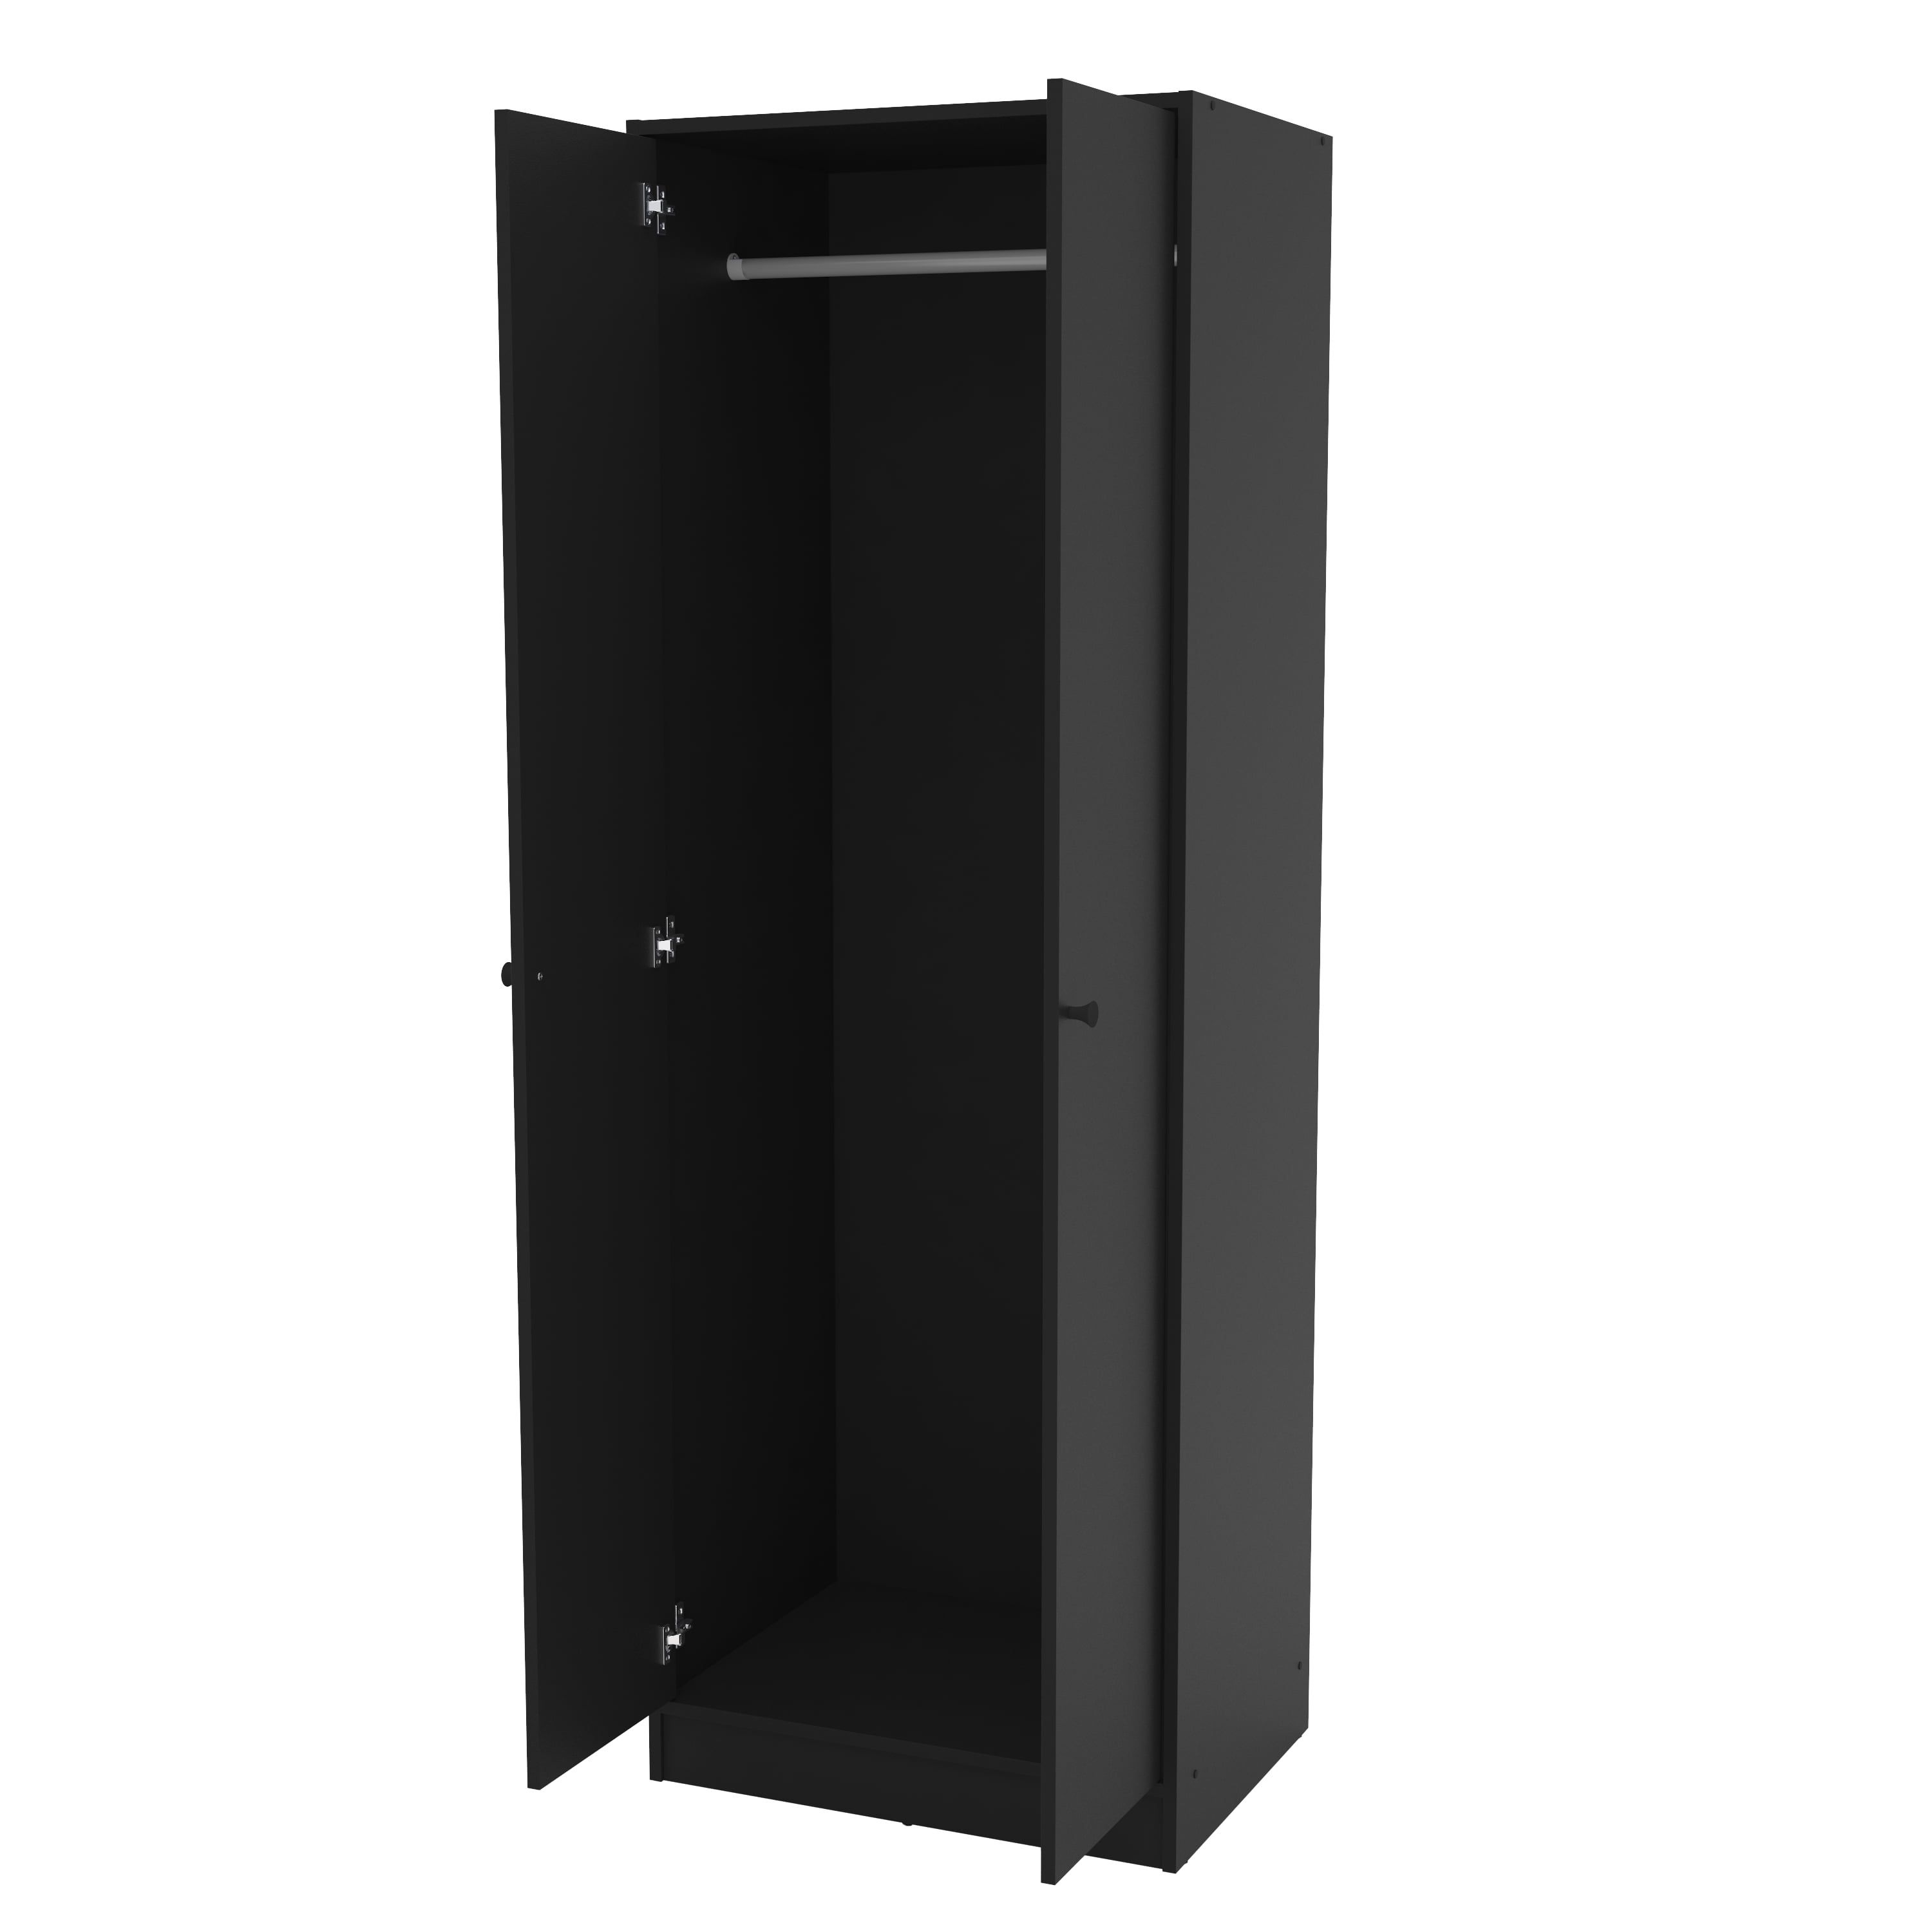 Polifurniture Denmark 2 Door Bedroom Armoire, Black – Walmart With Regard To Black Single Door Wardrobes (Gallery 18 of 20)